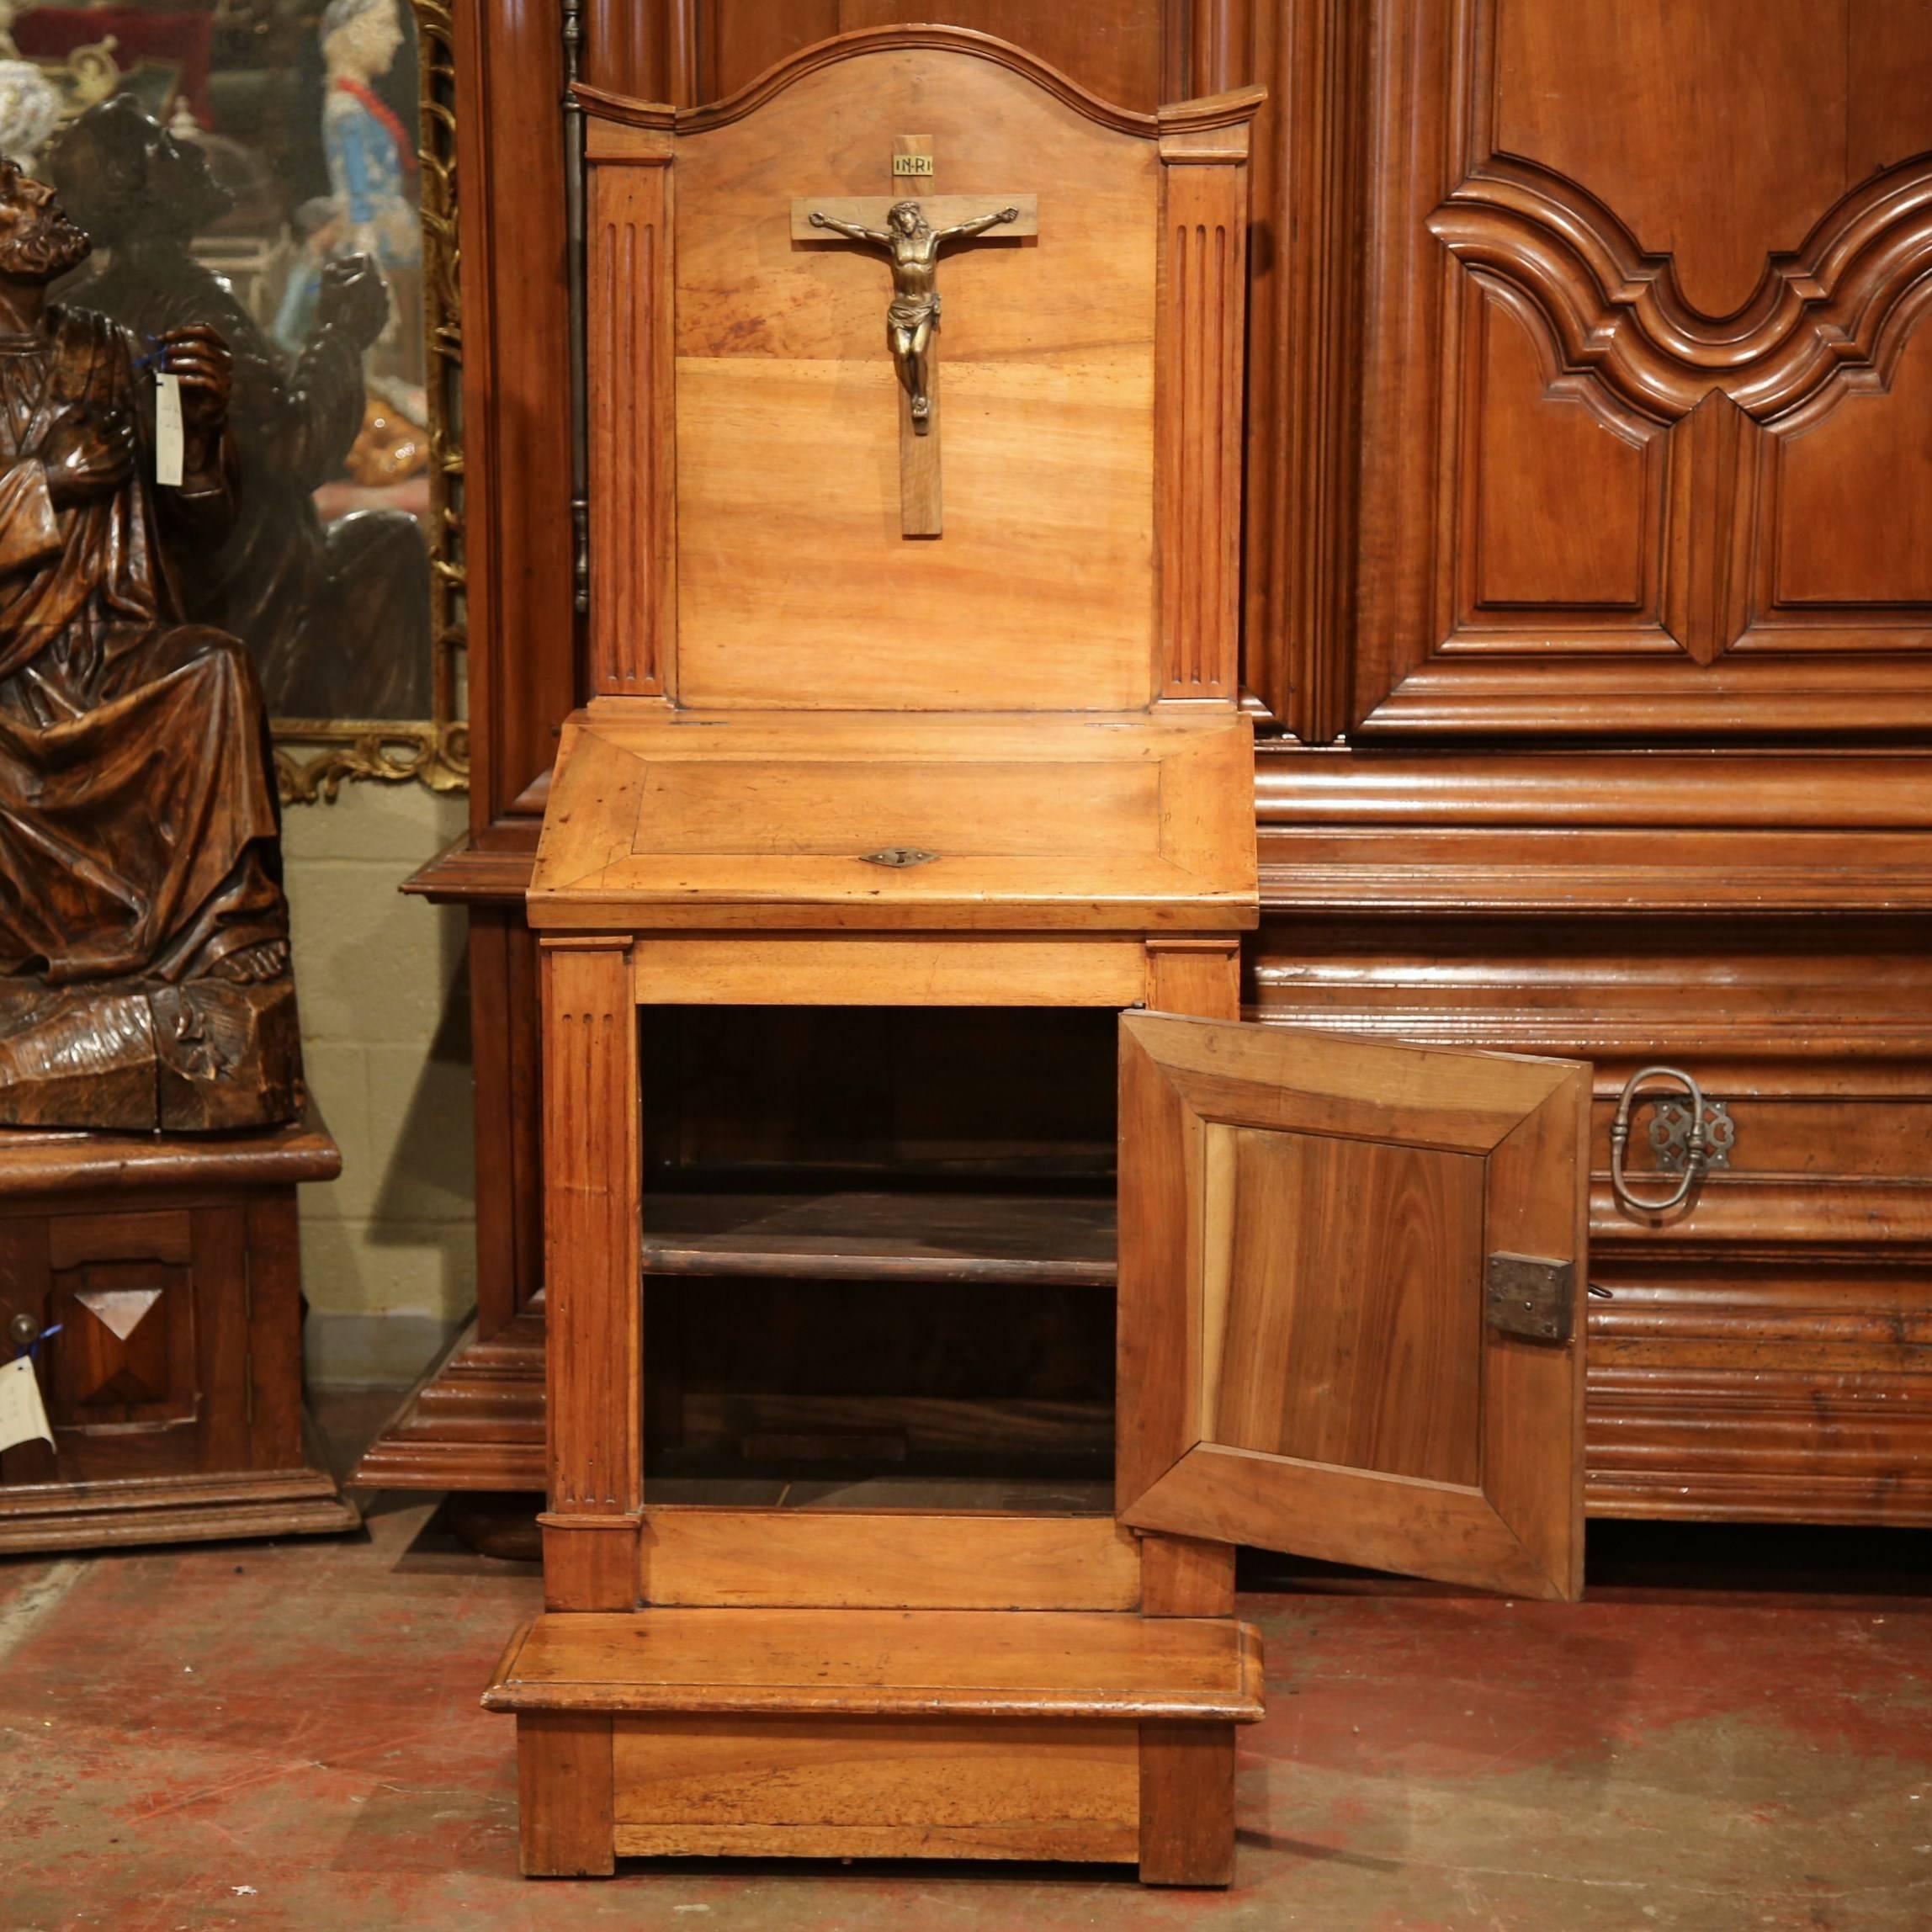 18th Century French Carved Walnut Oratoire Prayer Bench Cabinet from Burgundy (Französisch)